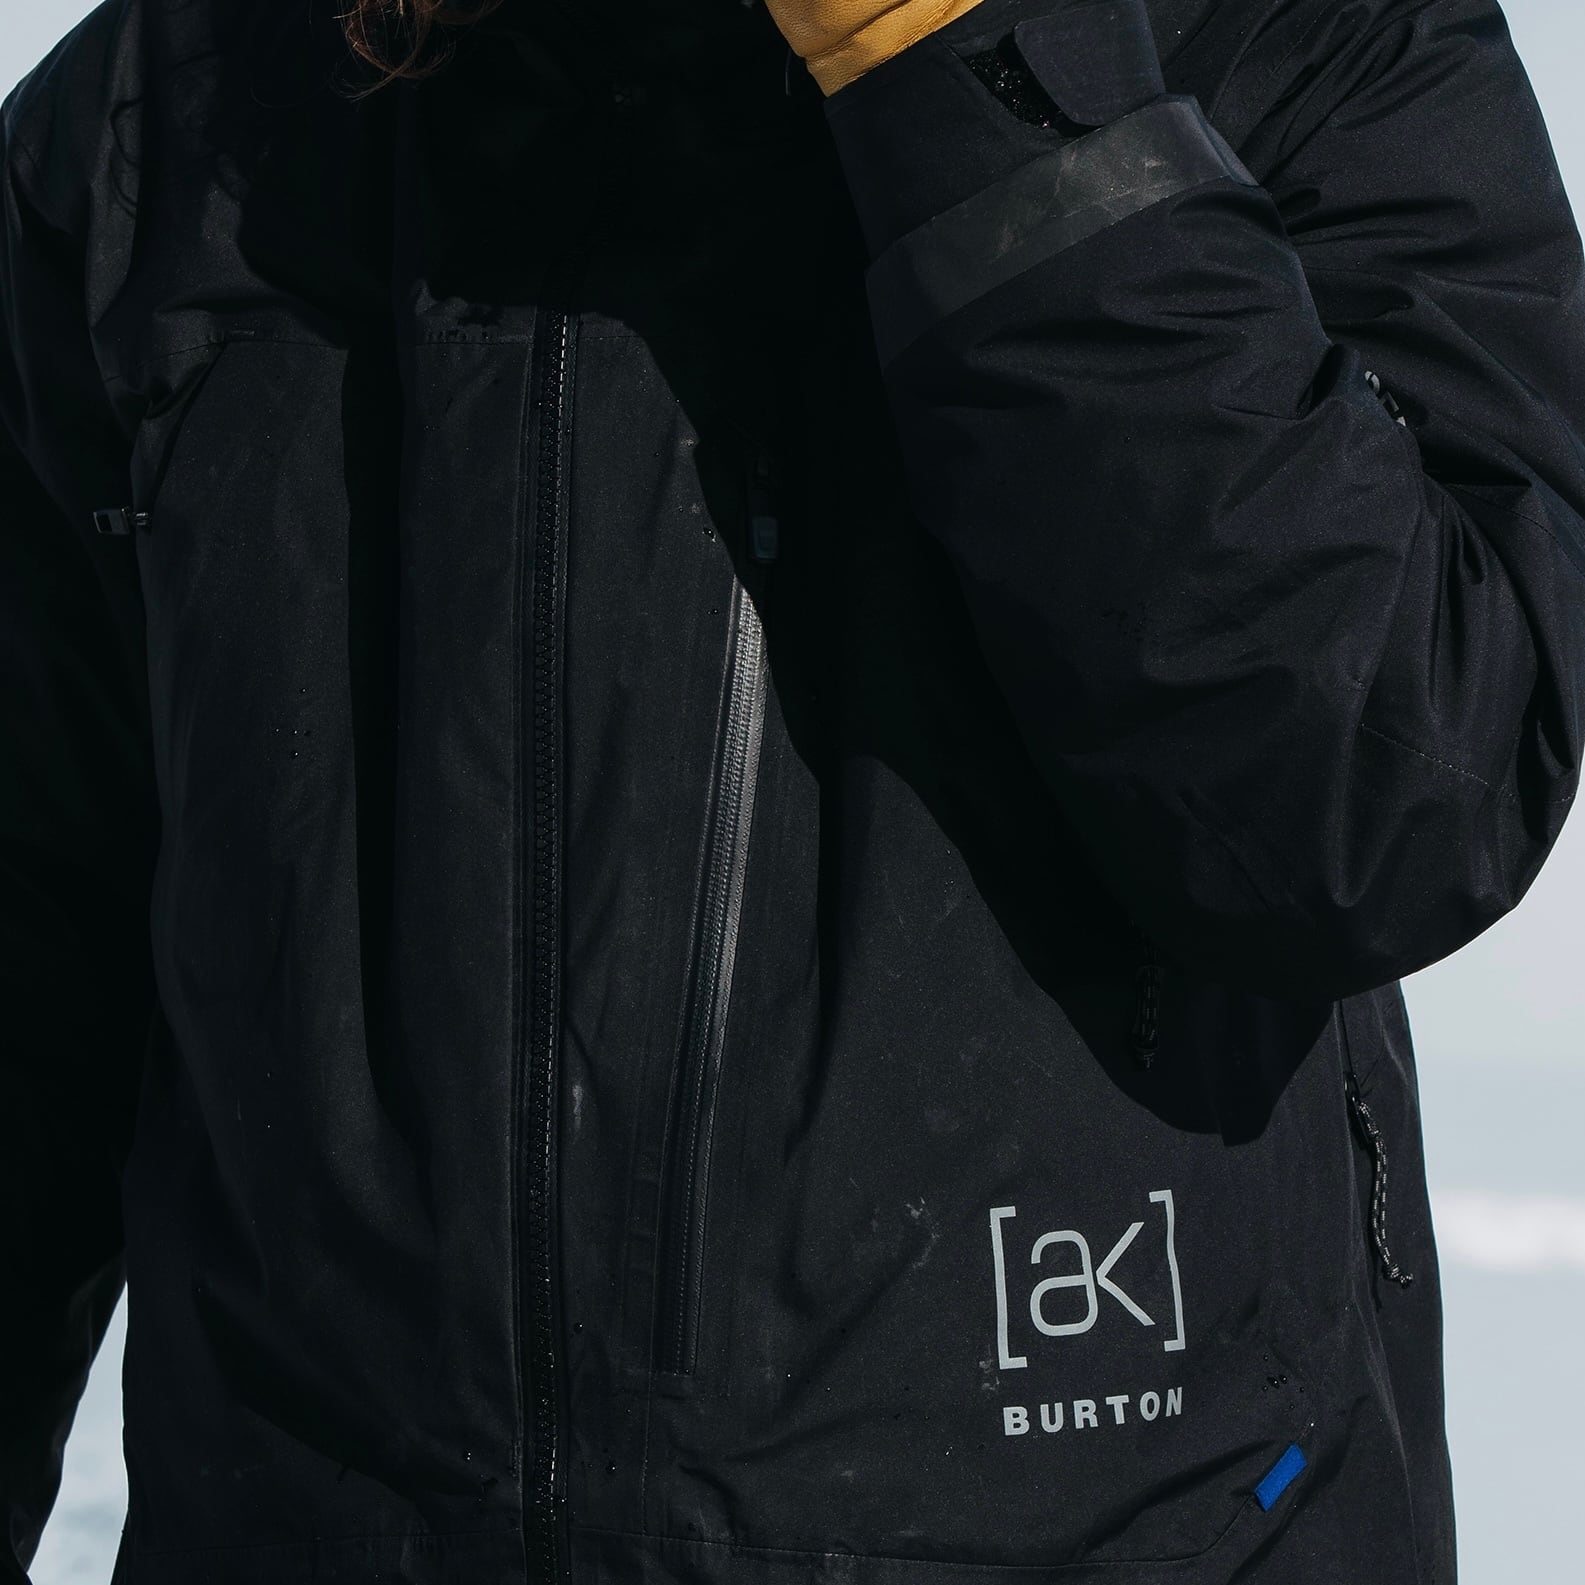 Men's Burton【ak】Tusk GORE-TEX Pro 3L ジャケット snowboard スノーボード ウェア タスクジャケット  ゴアテックス カービング パウダー バックカントリー フリーラン オールマウンテン オールラウンド メンズ レディース